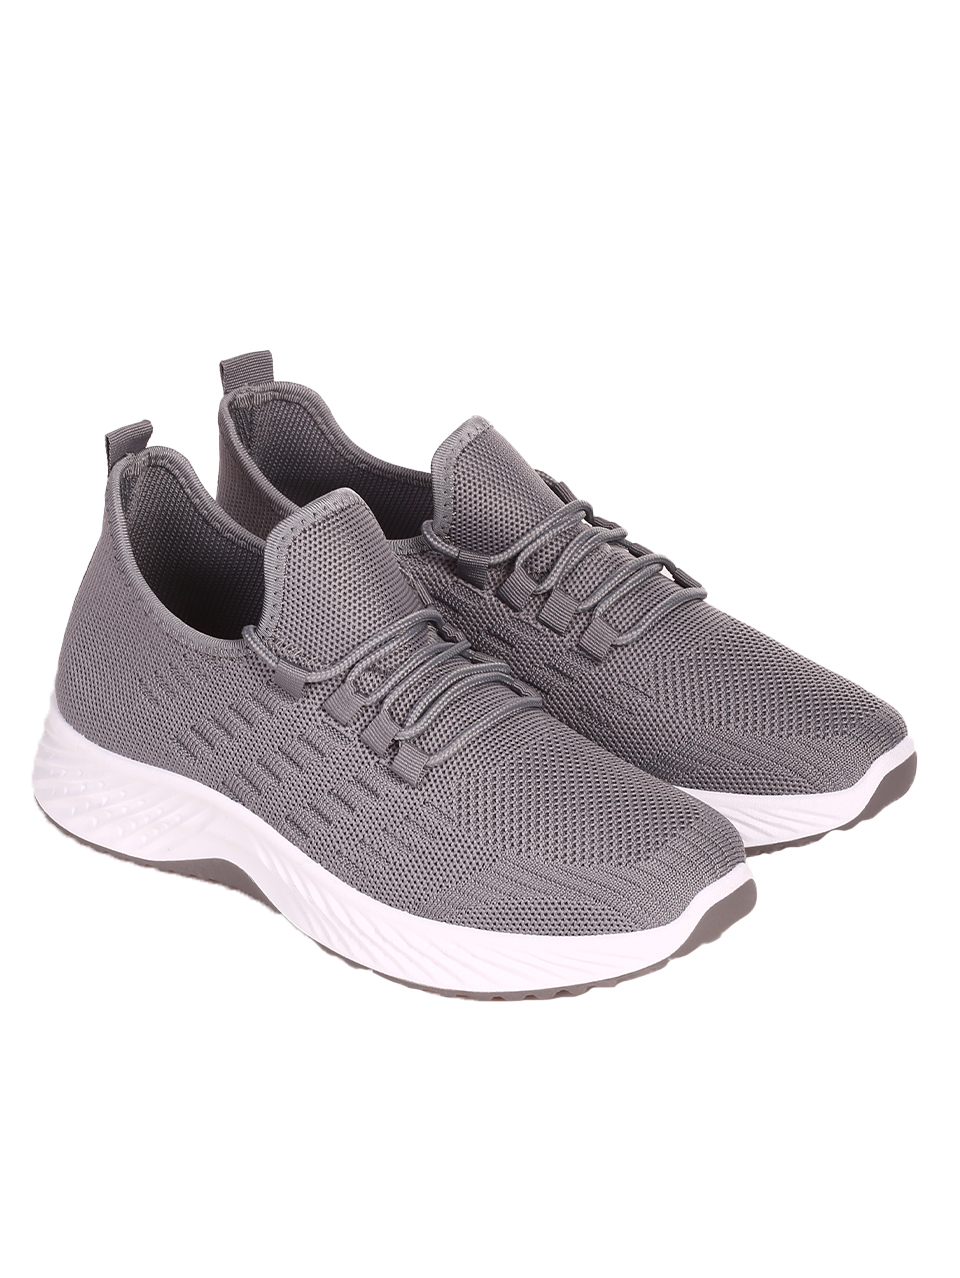 Ежедневни мъжки комфортни обувки в сиво 7U-23216 grey